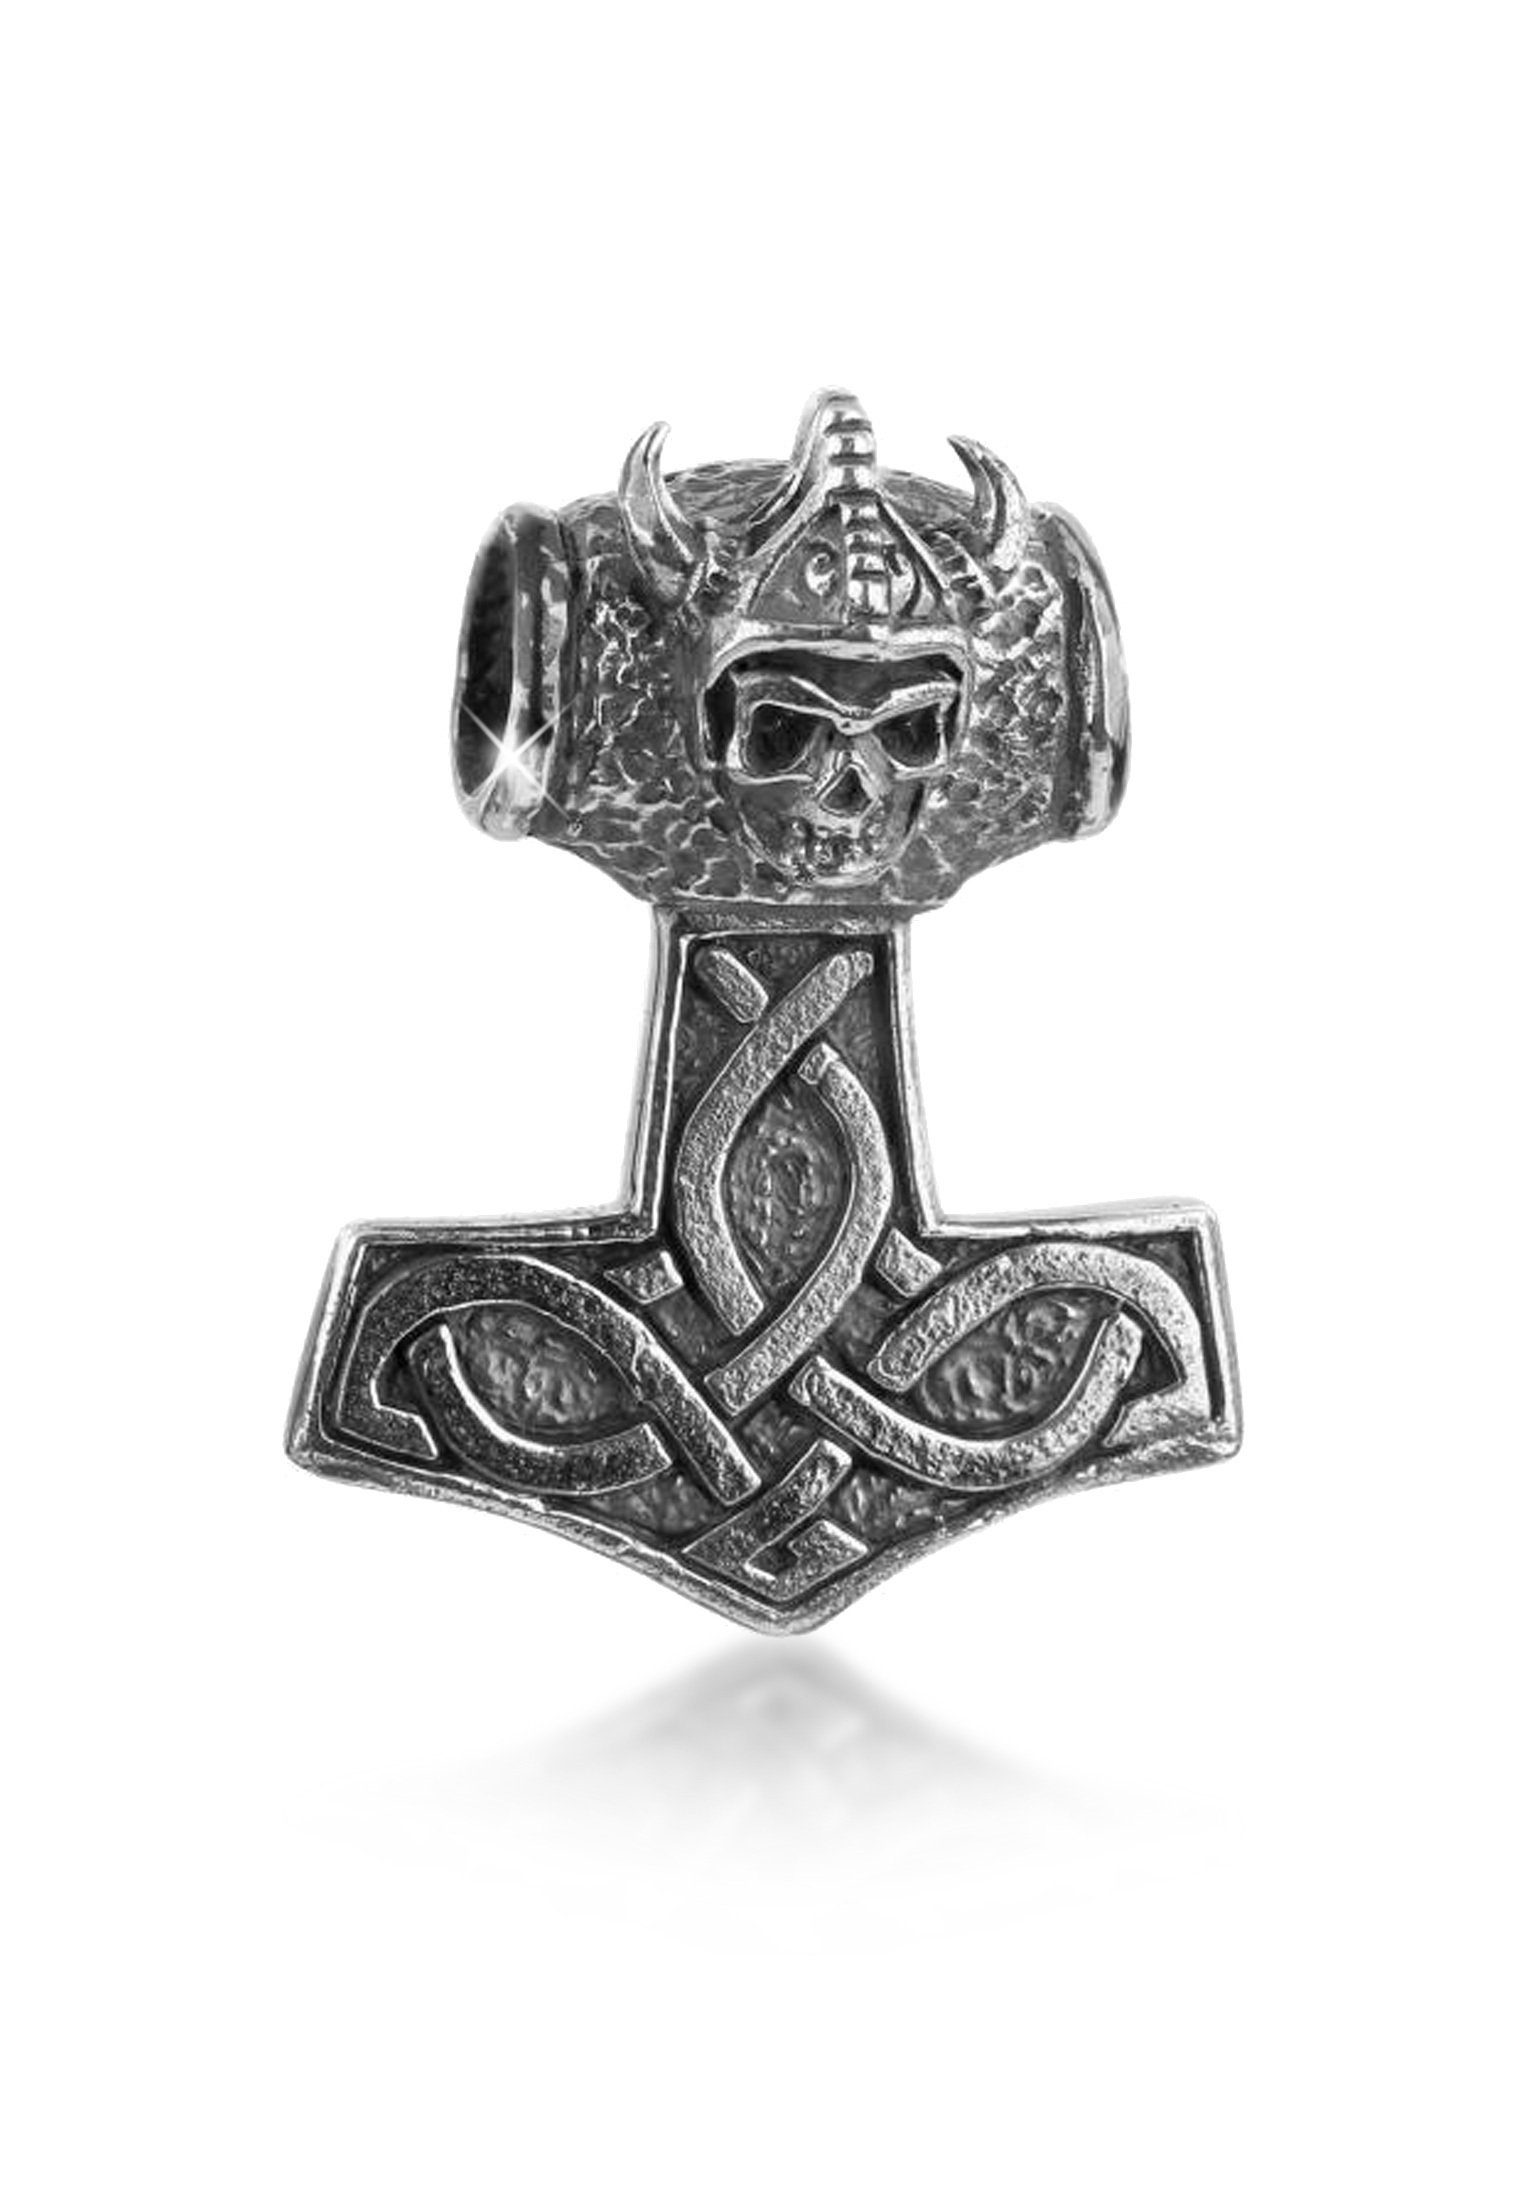 Kuzzoi Kettenanhänger Herren Thors Hammer Keltischer Knoten 925 Silber